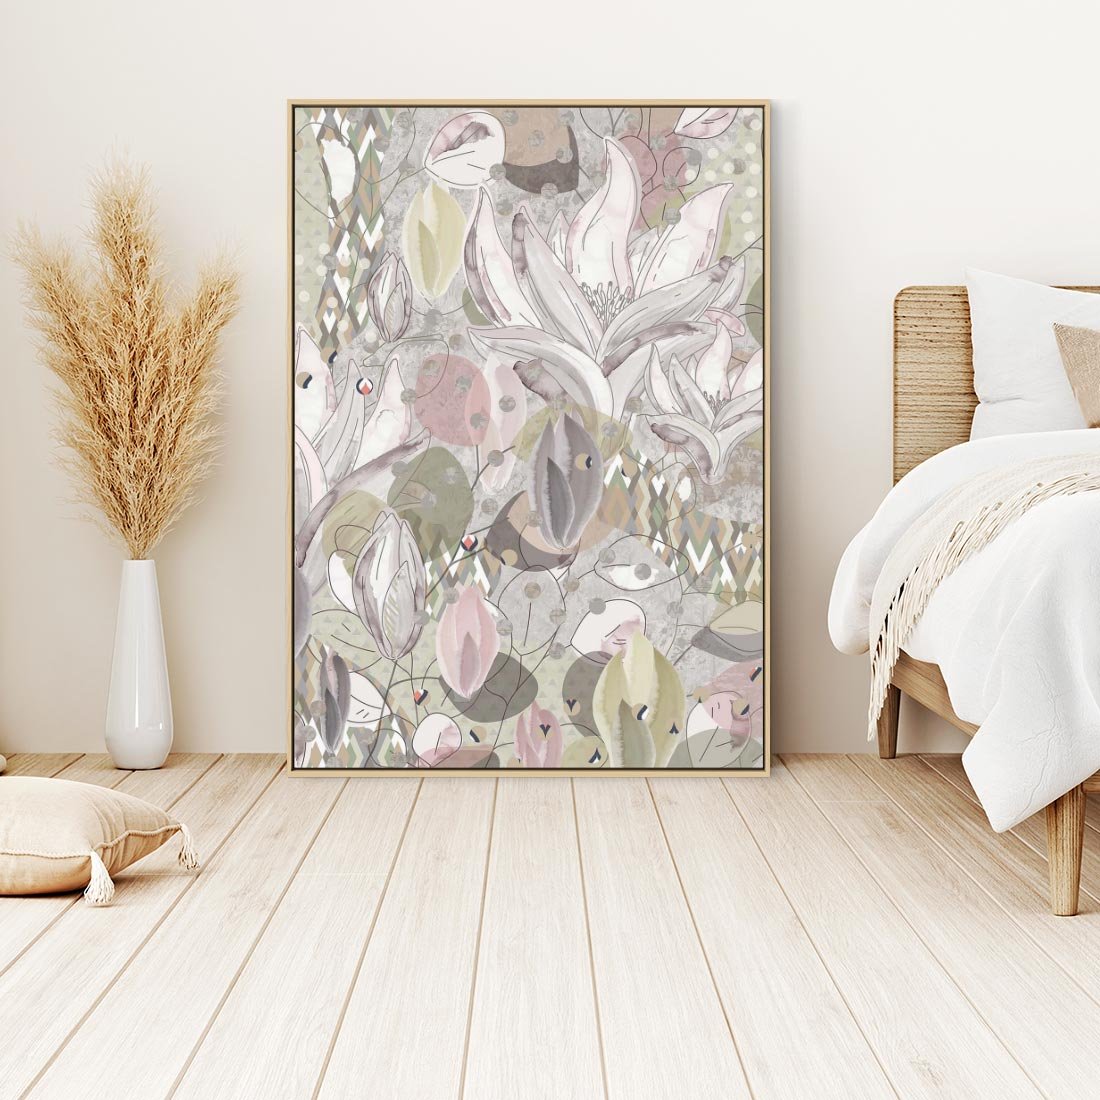 Obraz w ramie 50x70 - Pejzaże zatajonej duszy - połączenie tekstur, roślinne motywy - rama drewno